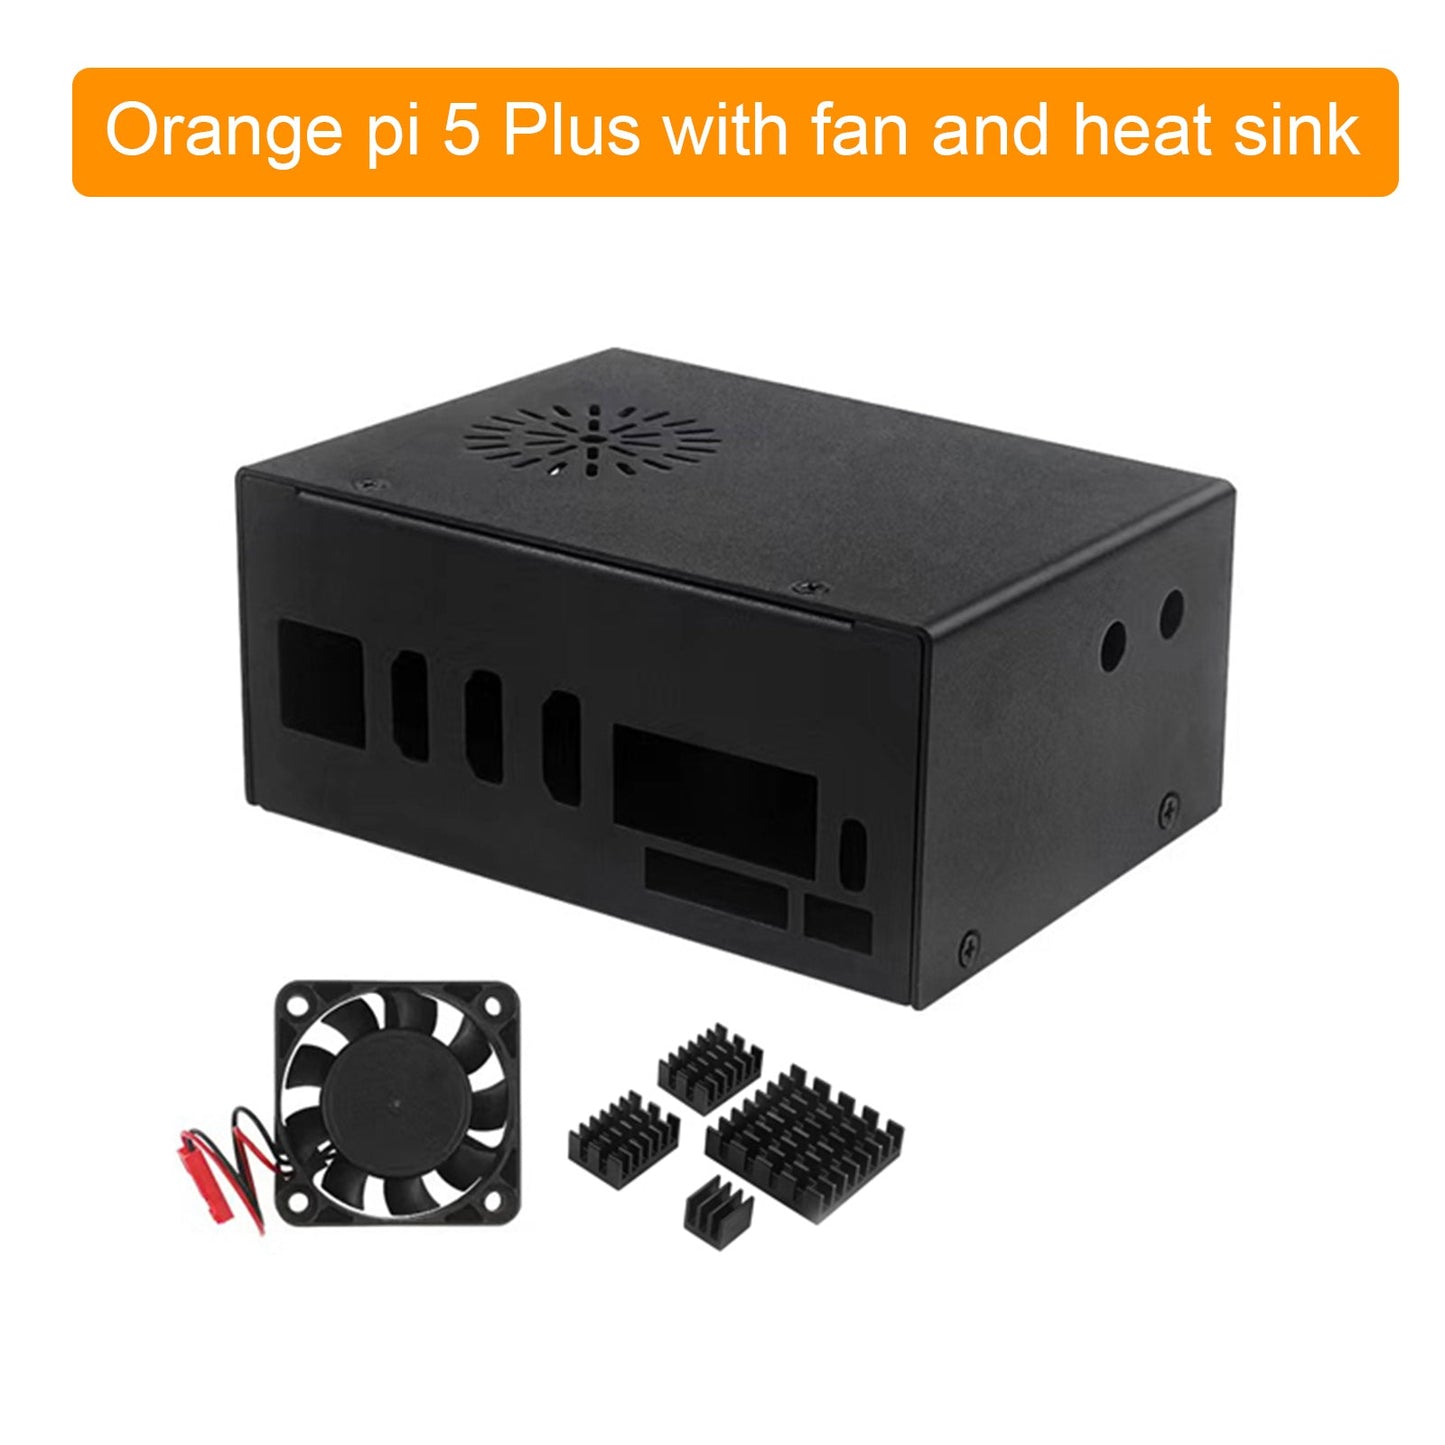 Orange pi 5 Plus Metallkühlgehäuse mit Lüfter und externer WLAN-Antenne